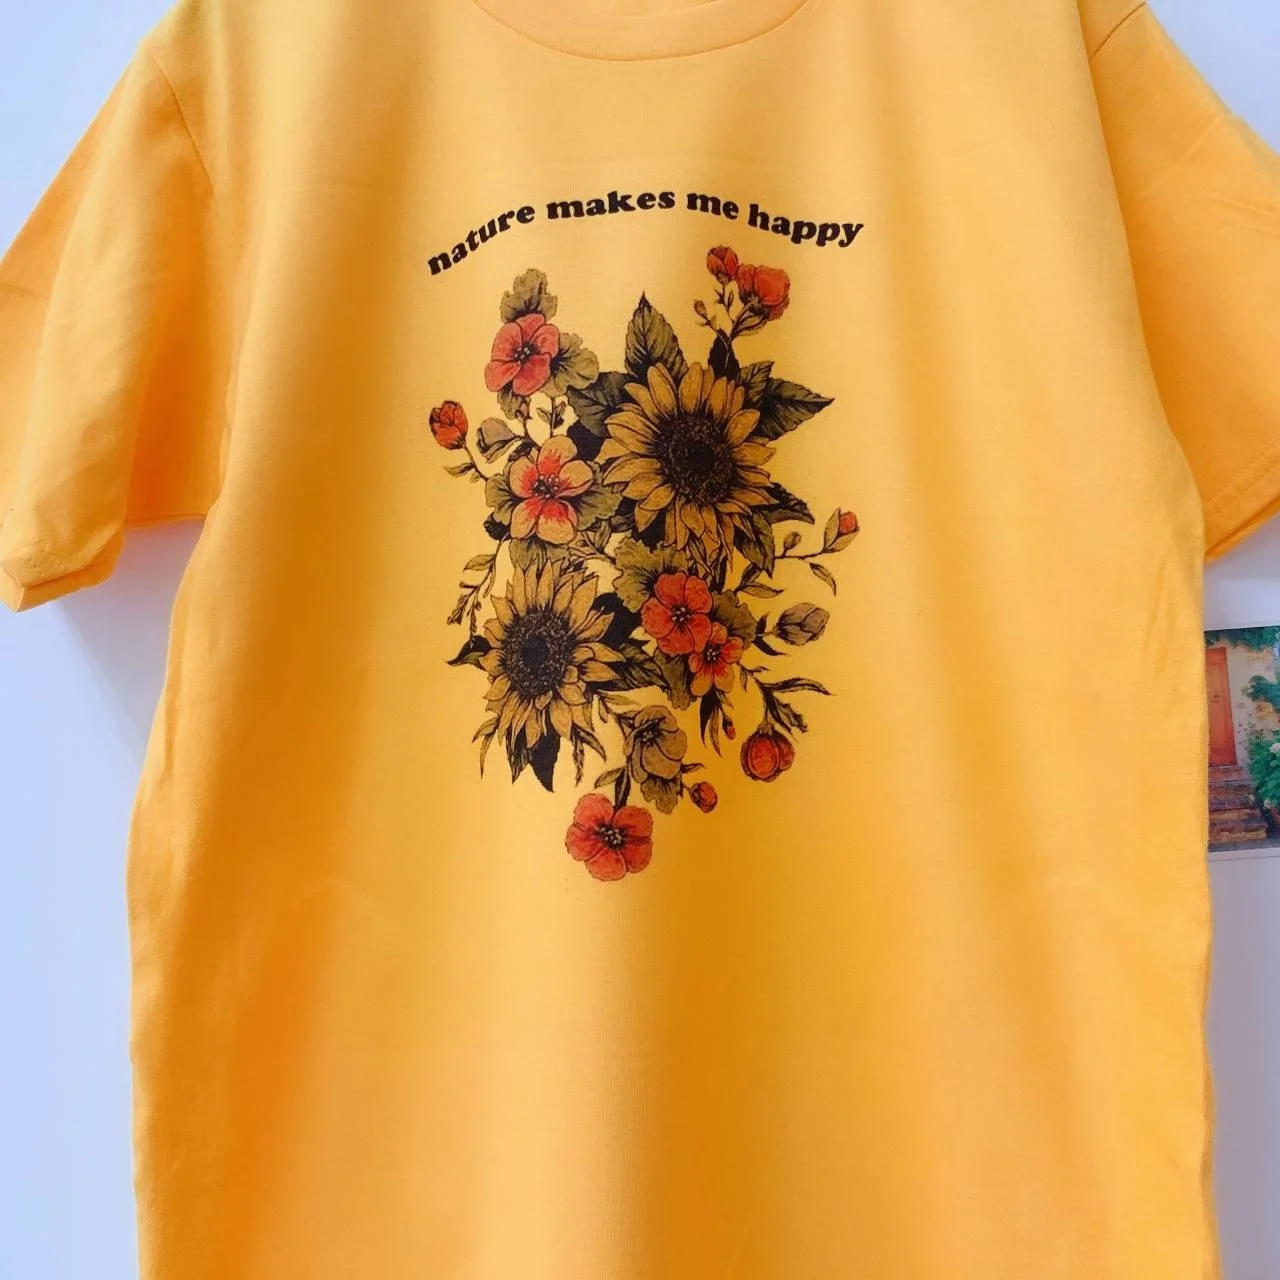 Kuakuayu HJN природа делает меня счастливым цветочным принтом Футболка Милая Эстетическая вдохновляющая Подсолнух Jeep Lovers рубашка